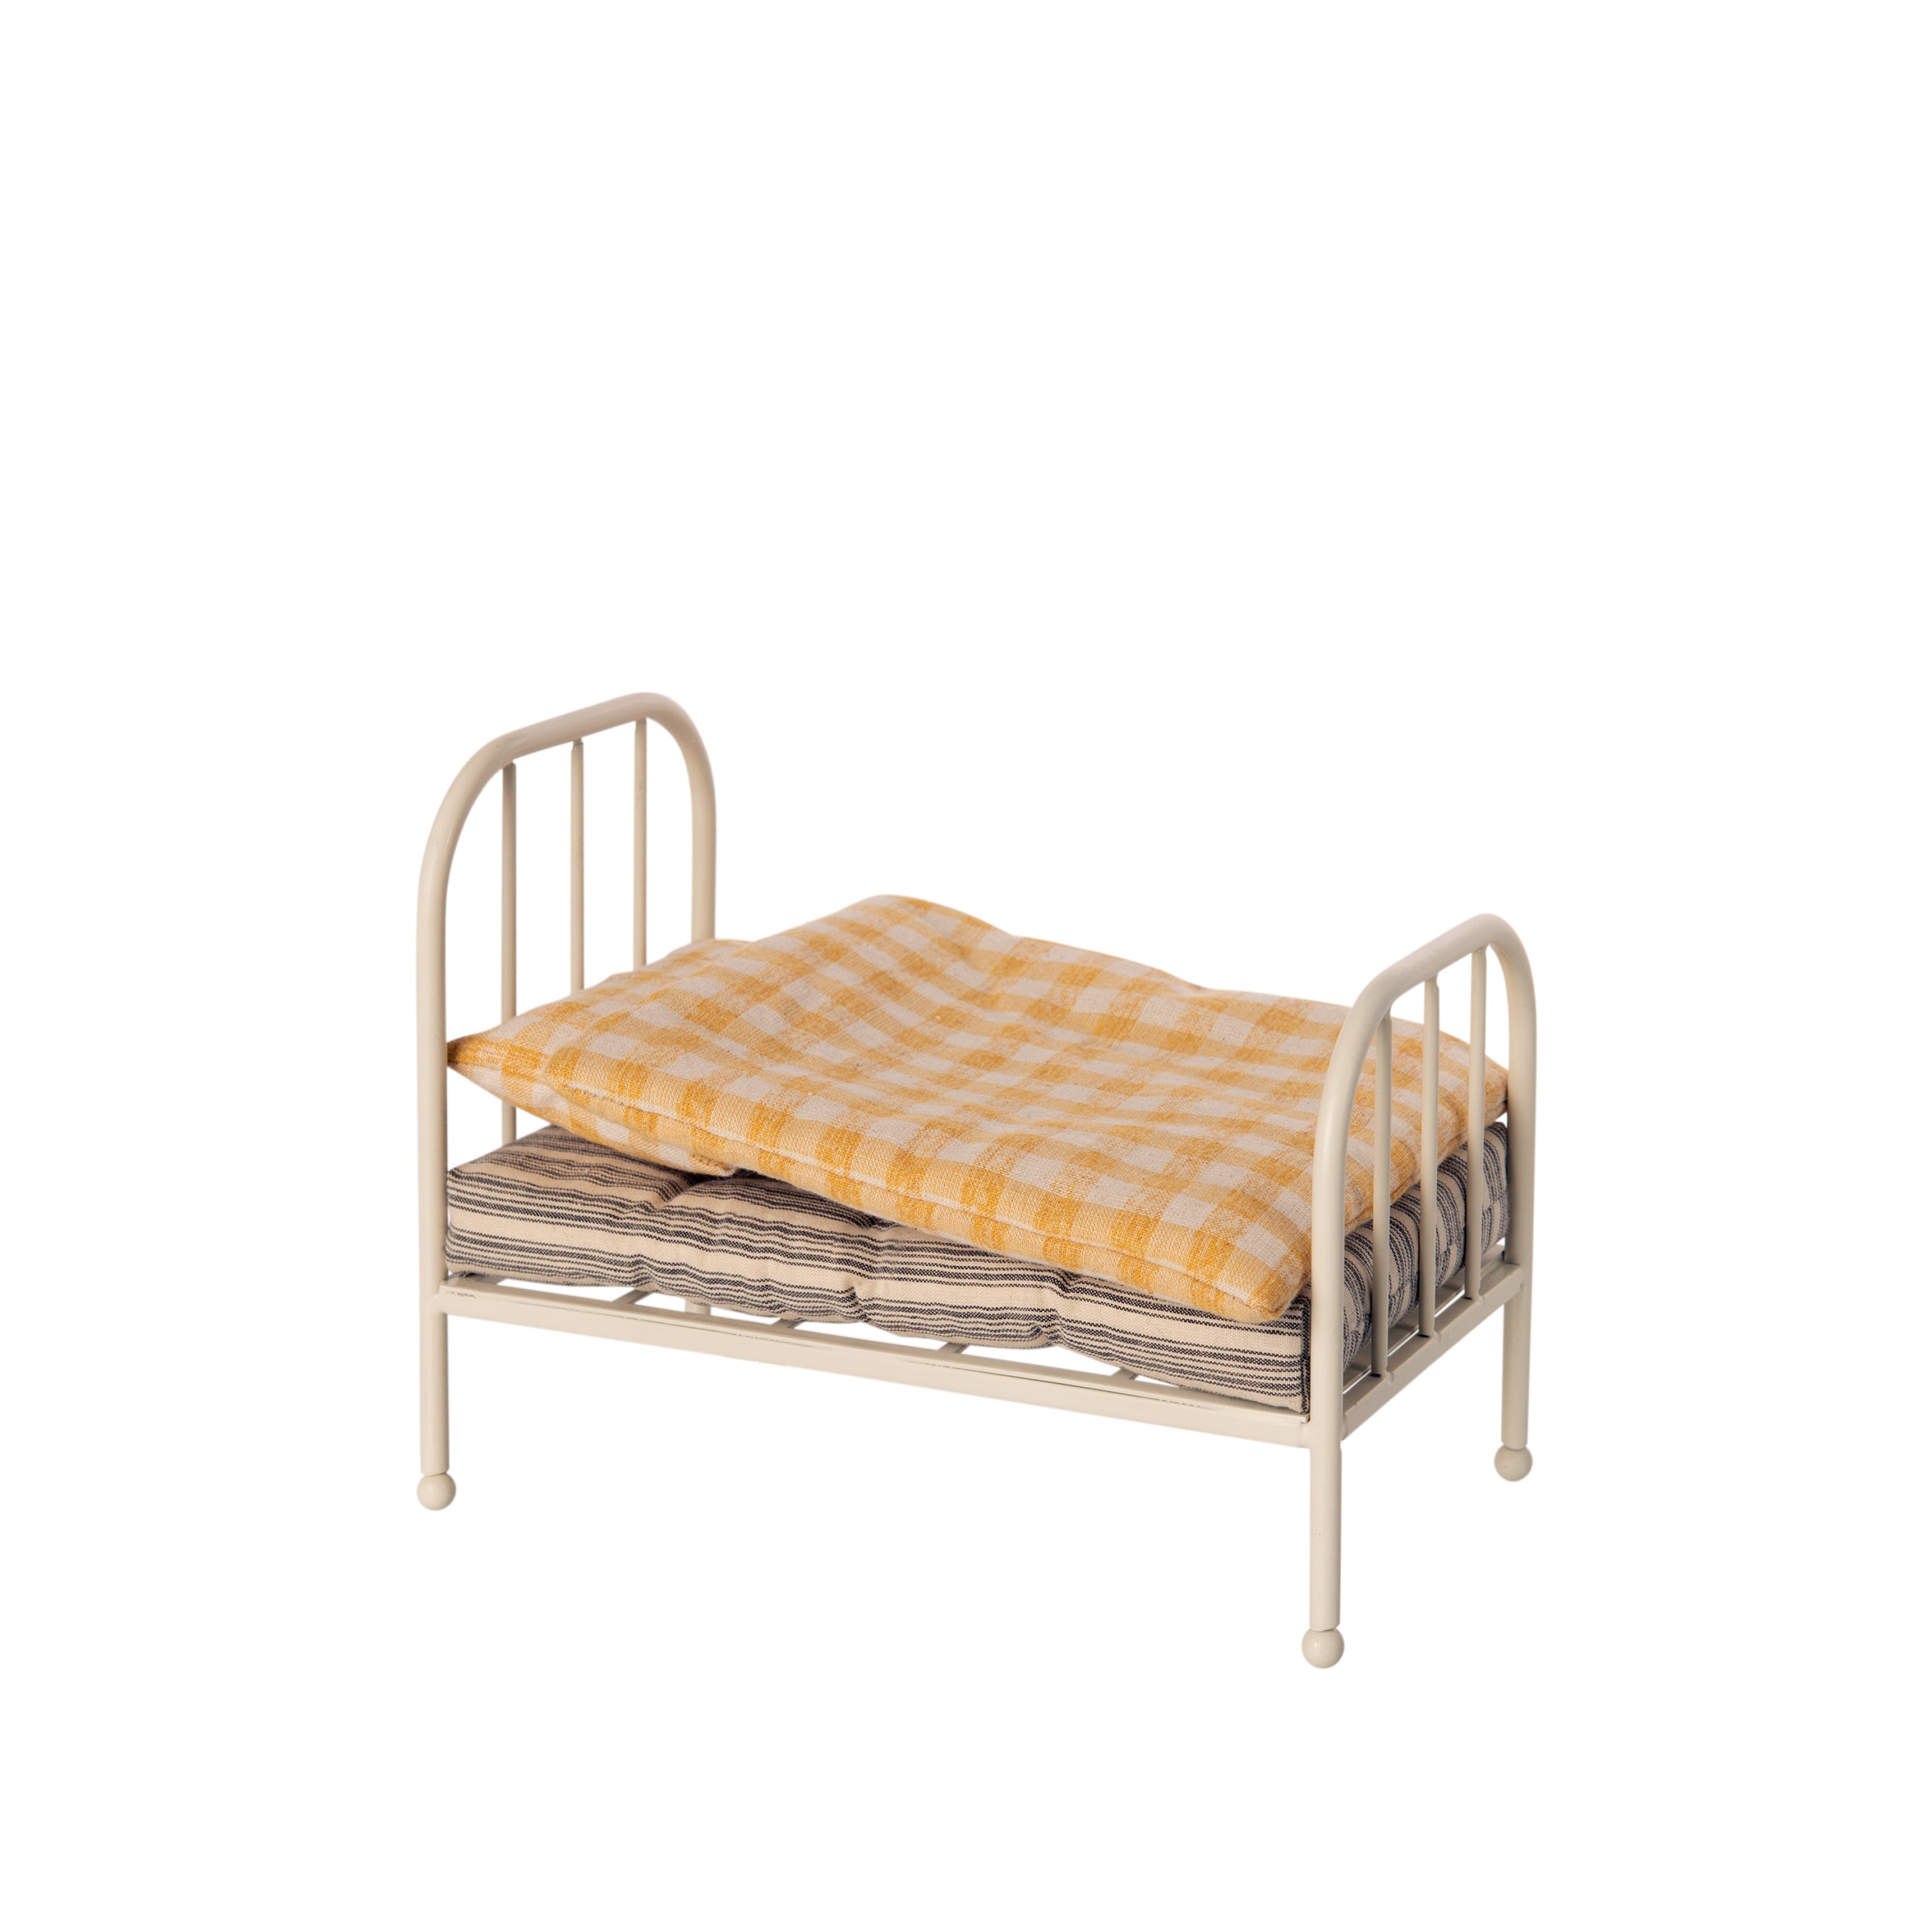 Bett in weiß mit gelber Bettwäsche für Teddy Junior aus Metall und Baumwolle bei kinder & konsorten auf der Lindemannstraße 1 in 40237 Düsseldorf erhältlich